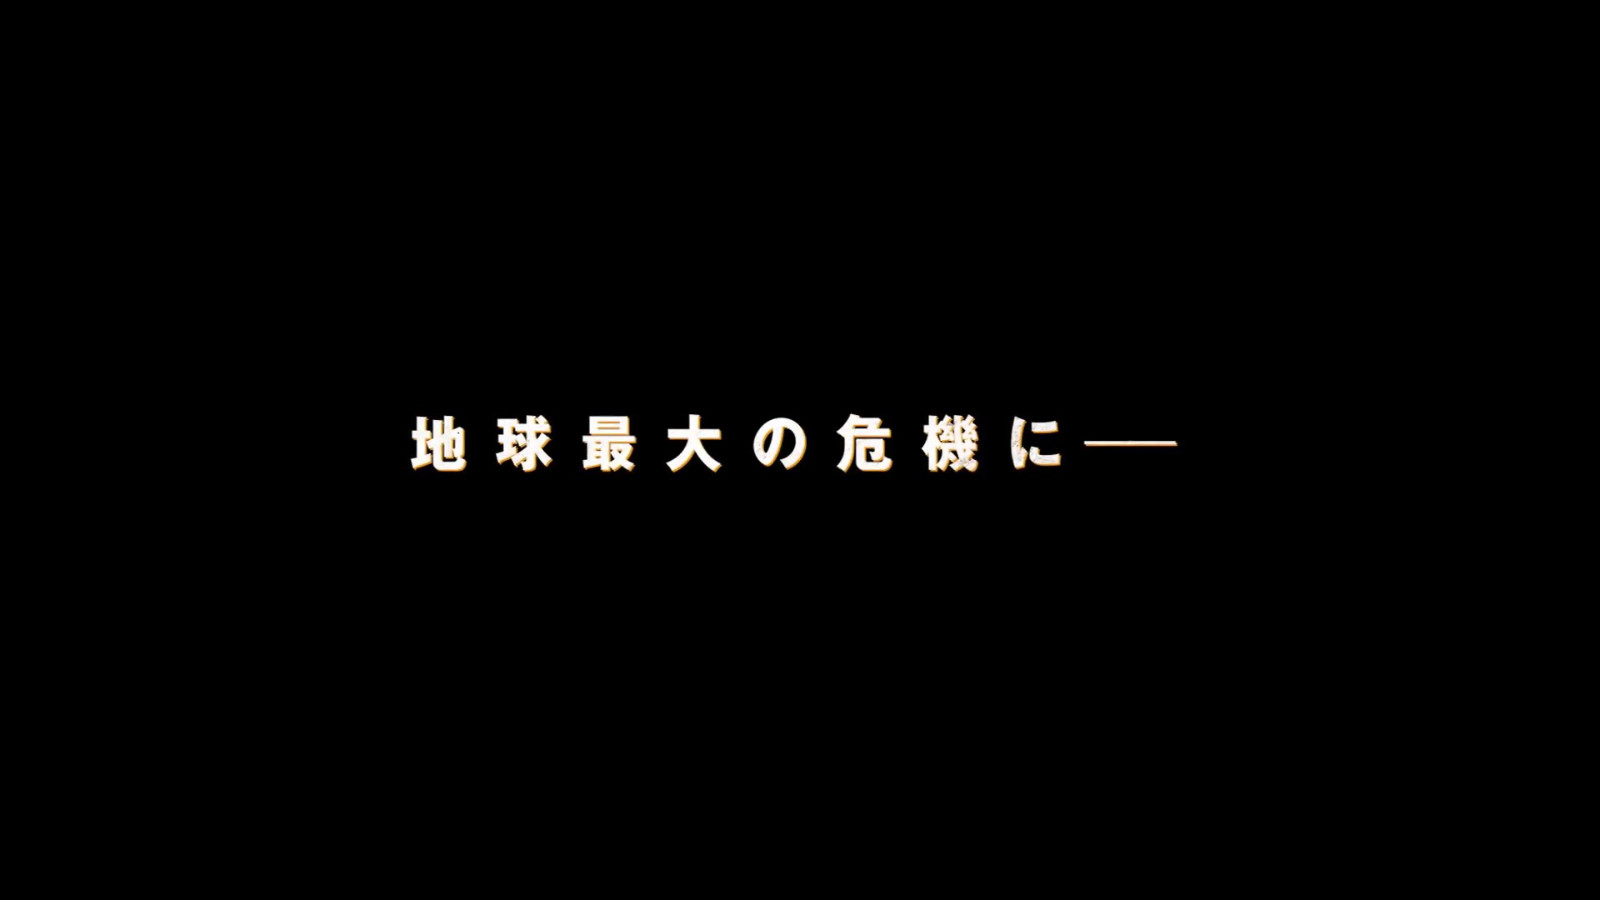 天竺鼠车车联动变形金刚 为《超能勇士崛起》日本上映预热